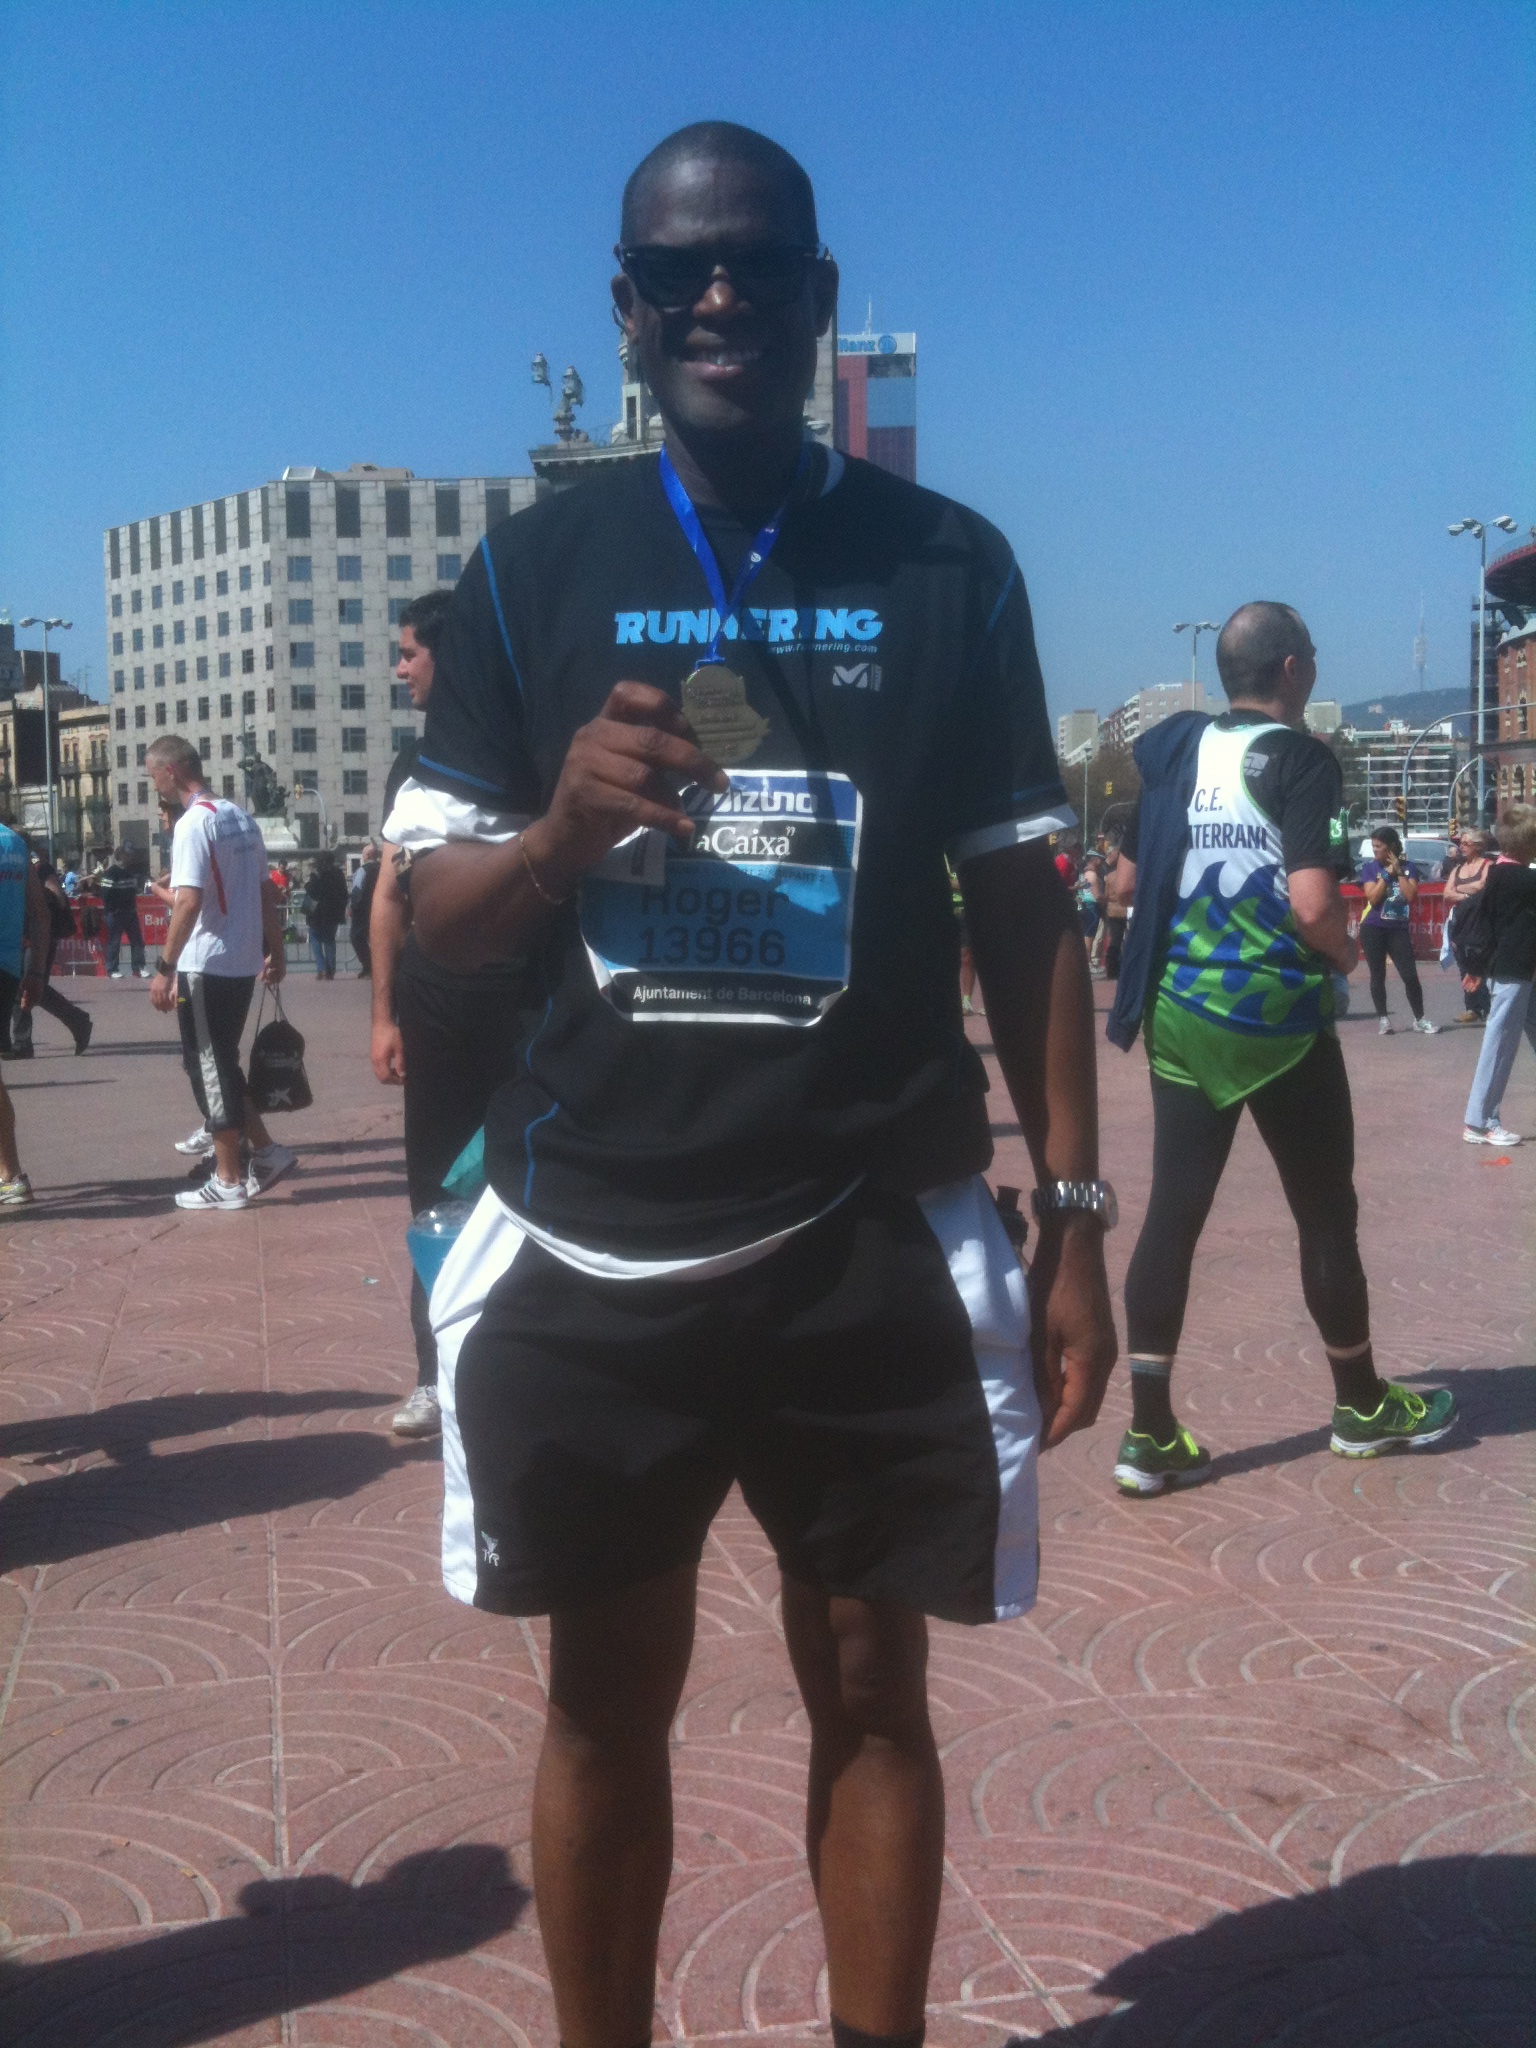 Finished the Barcelona Marathon 2012